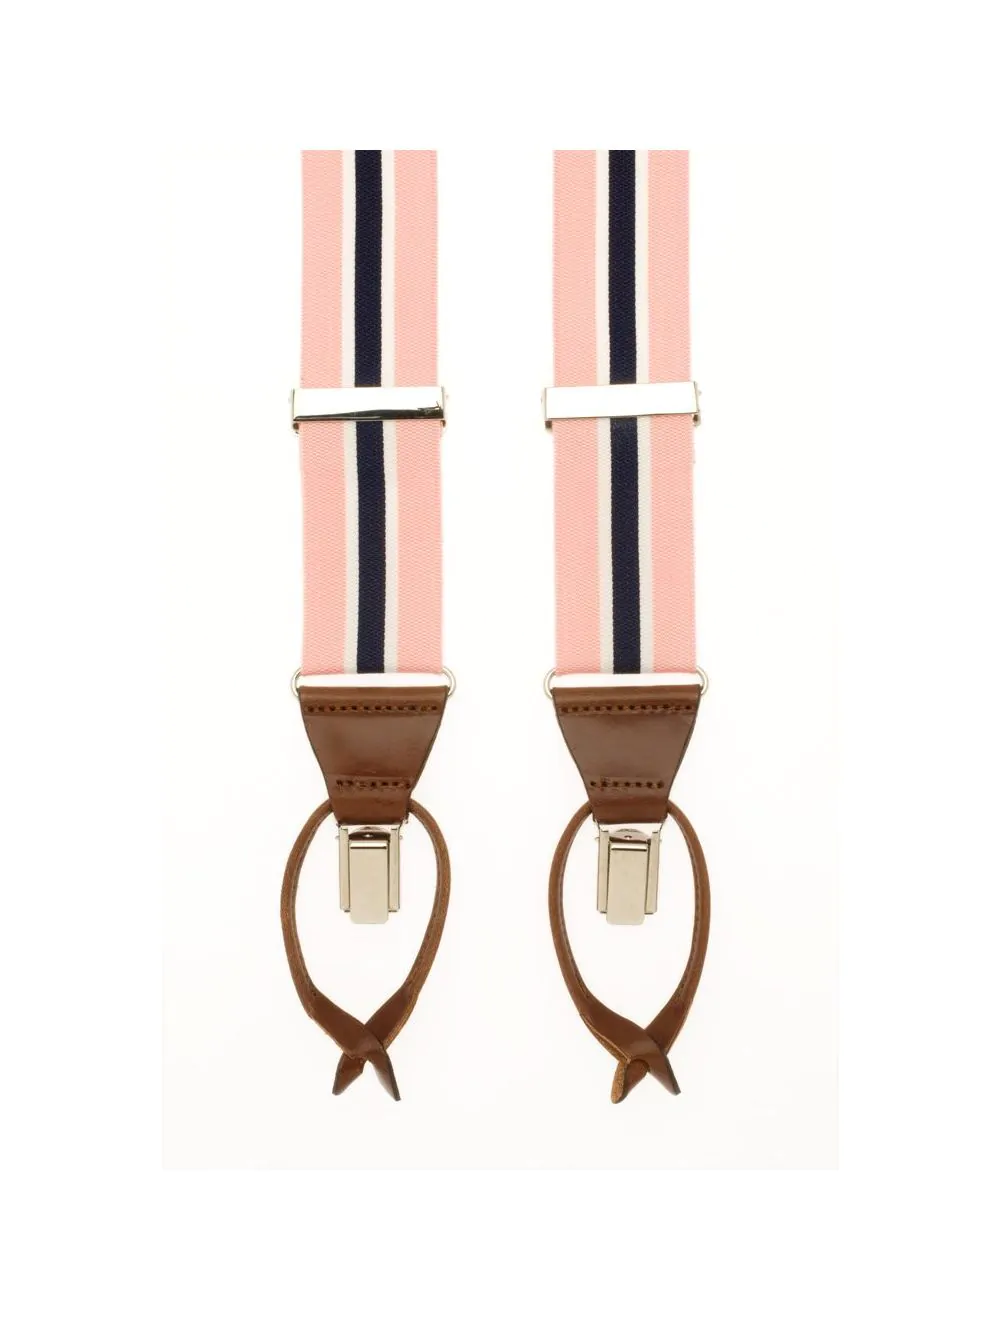 Gestreepte bretels in de kleur roze blauw van het merk Hein Strijker Bretels.nl